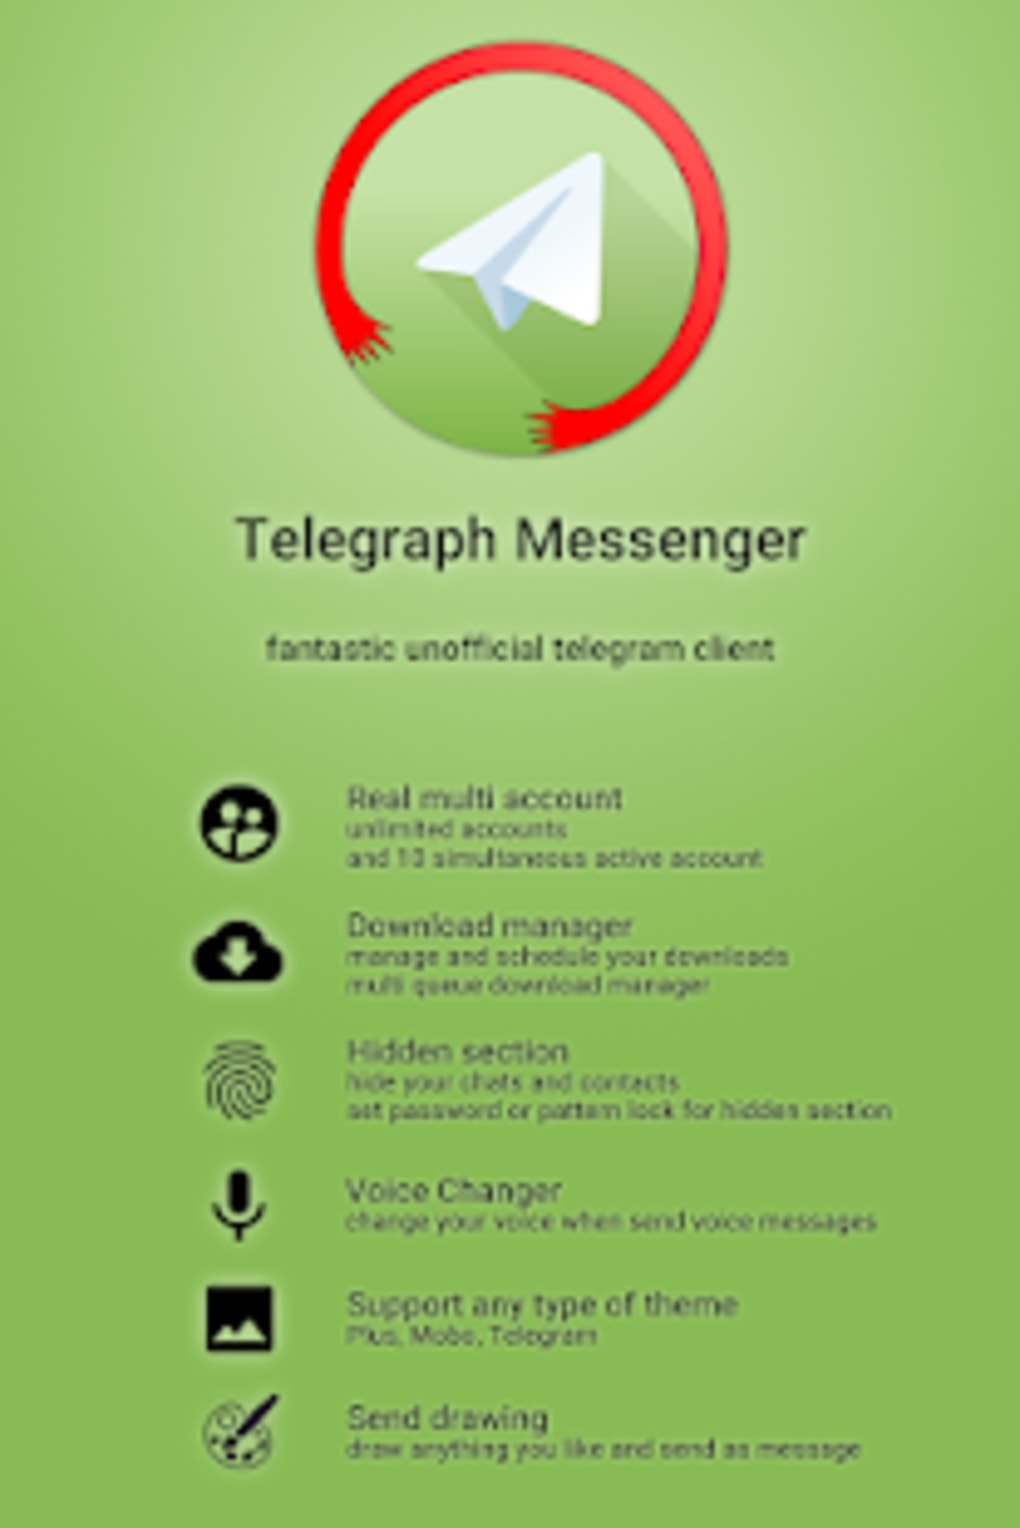 Скачать приложение телеграмм бесплатно на телефон на русском языке без вирусов фото 51